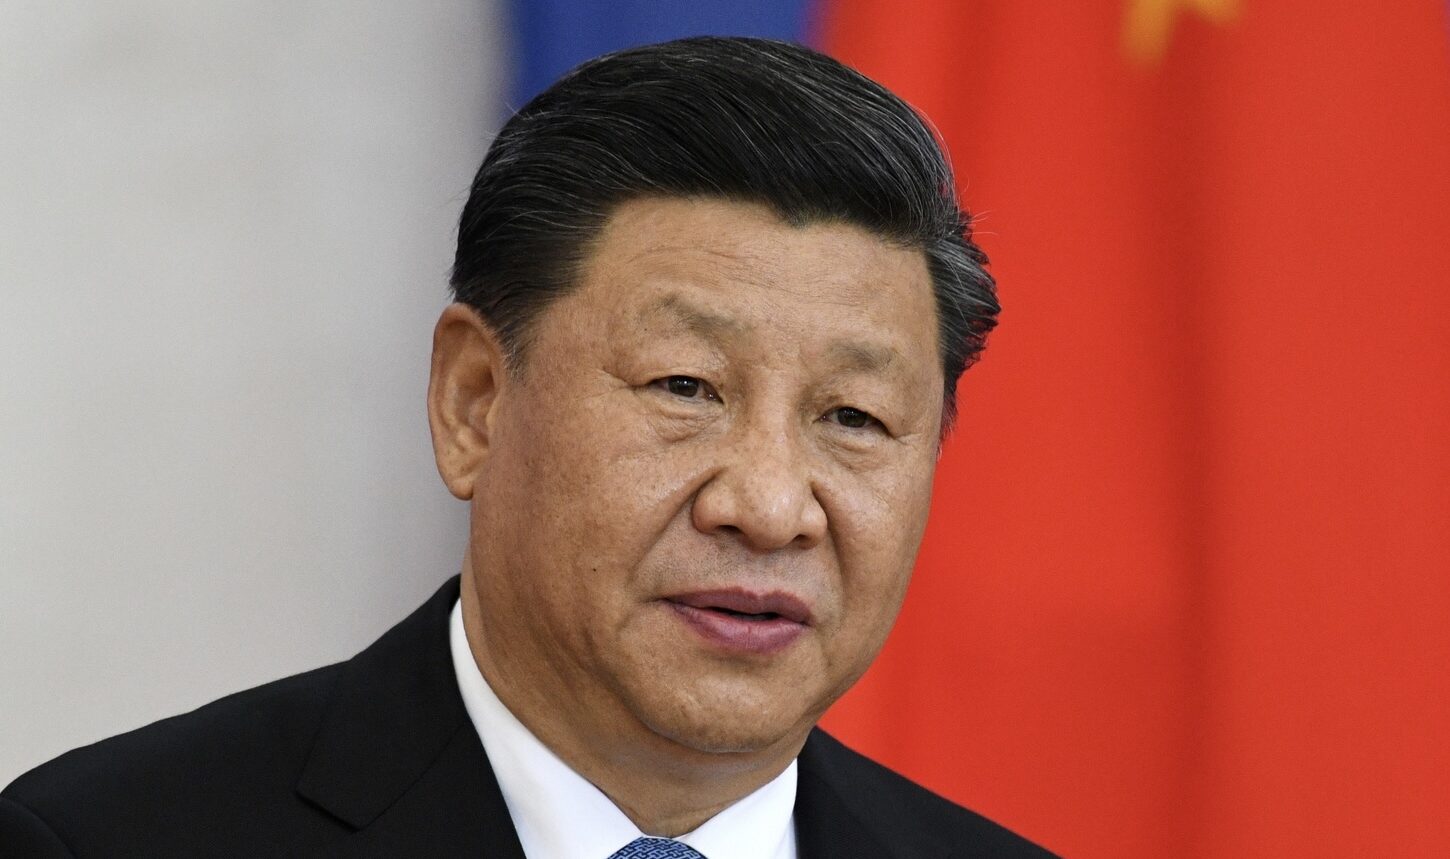 لتطوير الشراكة بين البلدين.. رئيس الصين يصل موسكو